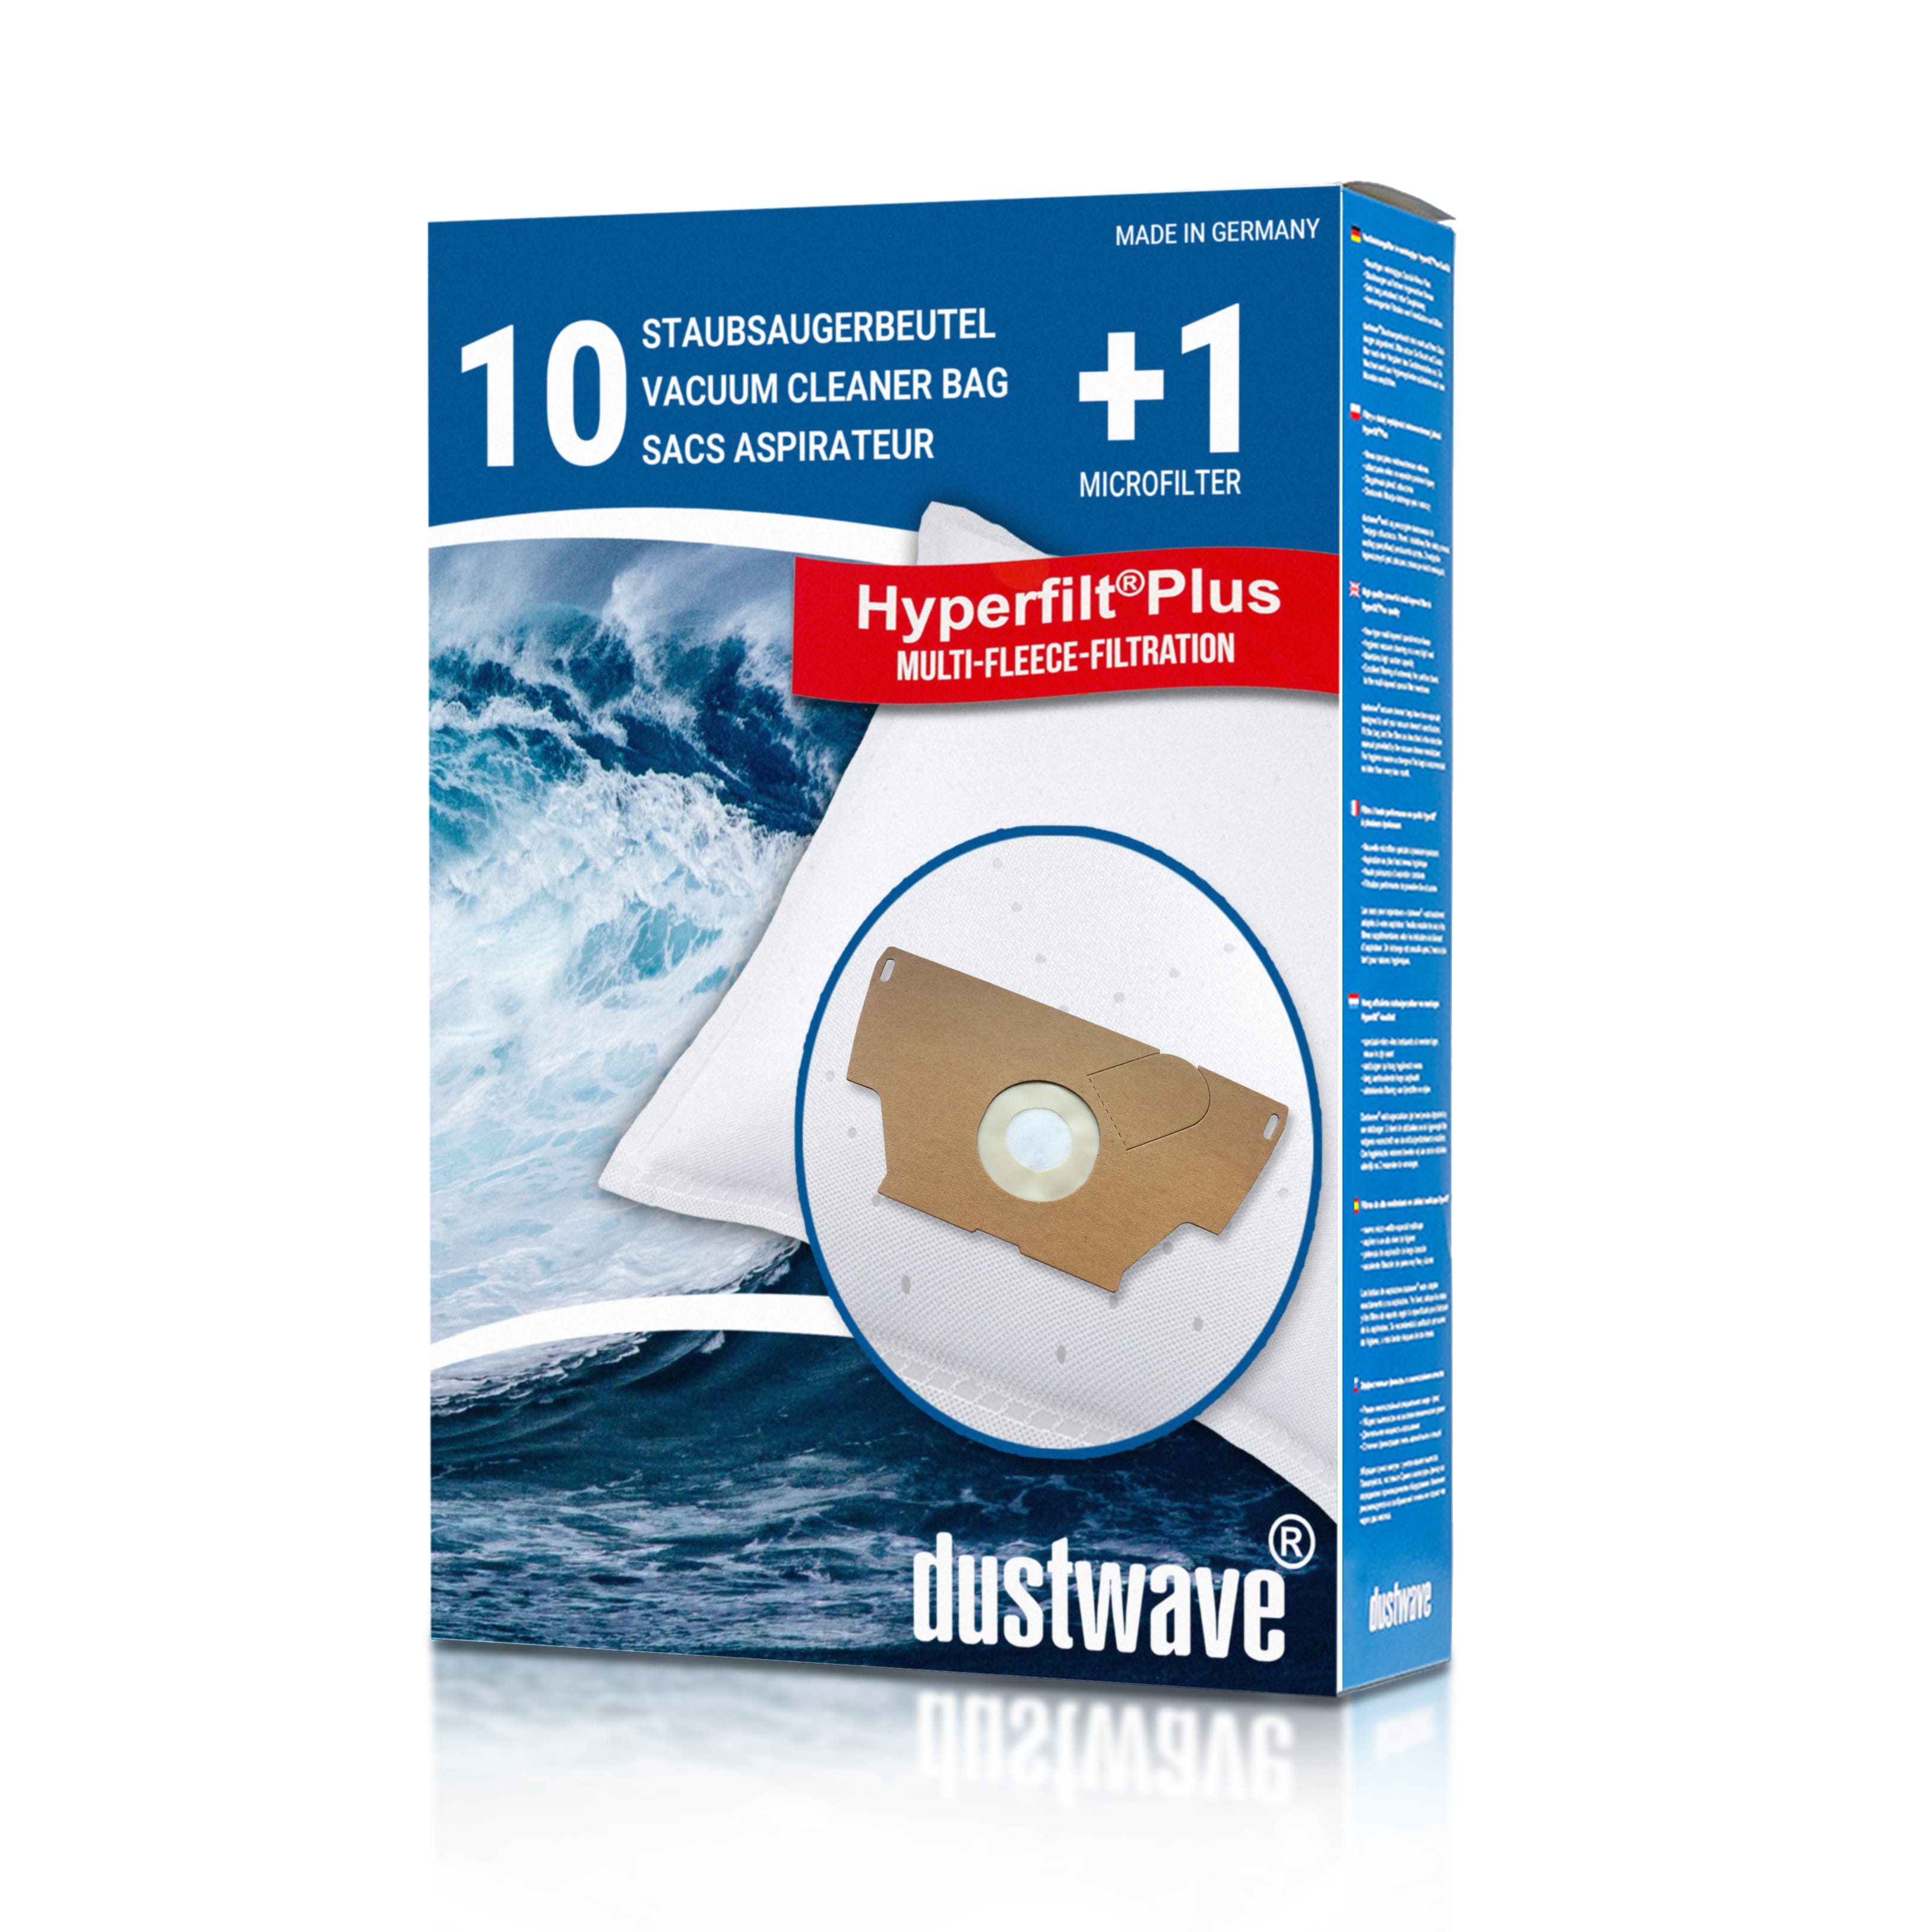 Dustwave® 10 Staubsaugerbeutel für Base BA 1200 / BA1200 - hocheffizient, mehrlagiges Mikrovlies mit Hygieneverschluss - Made in Germany